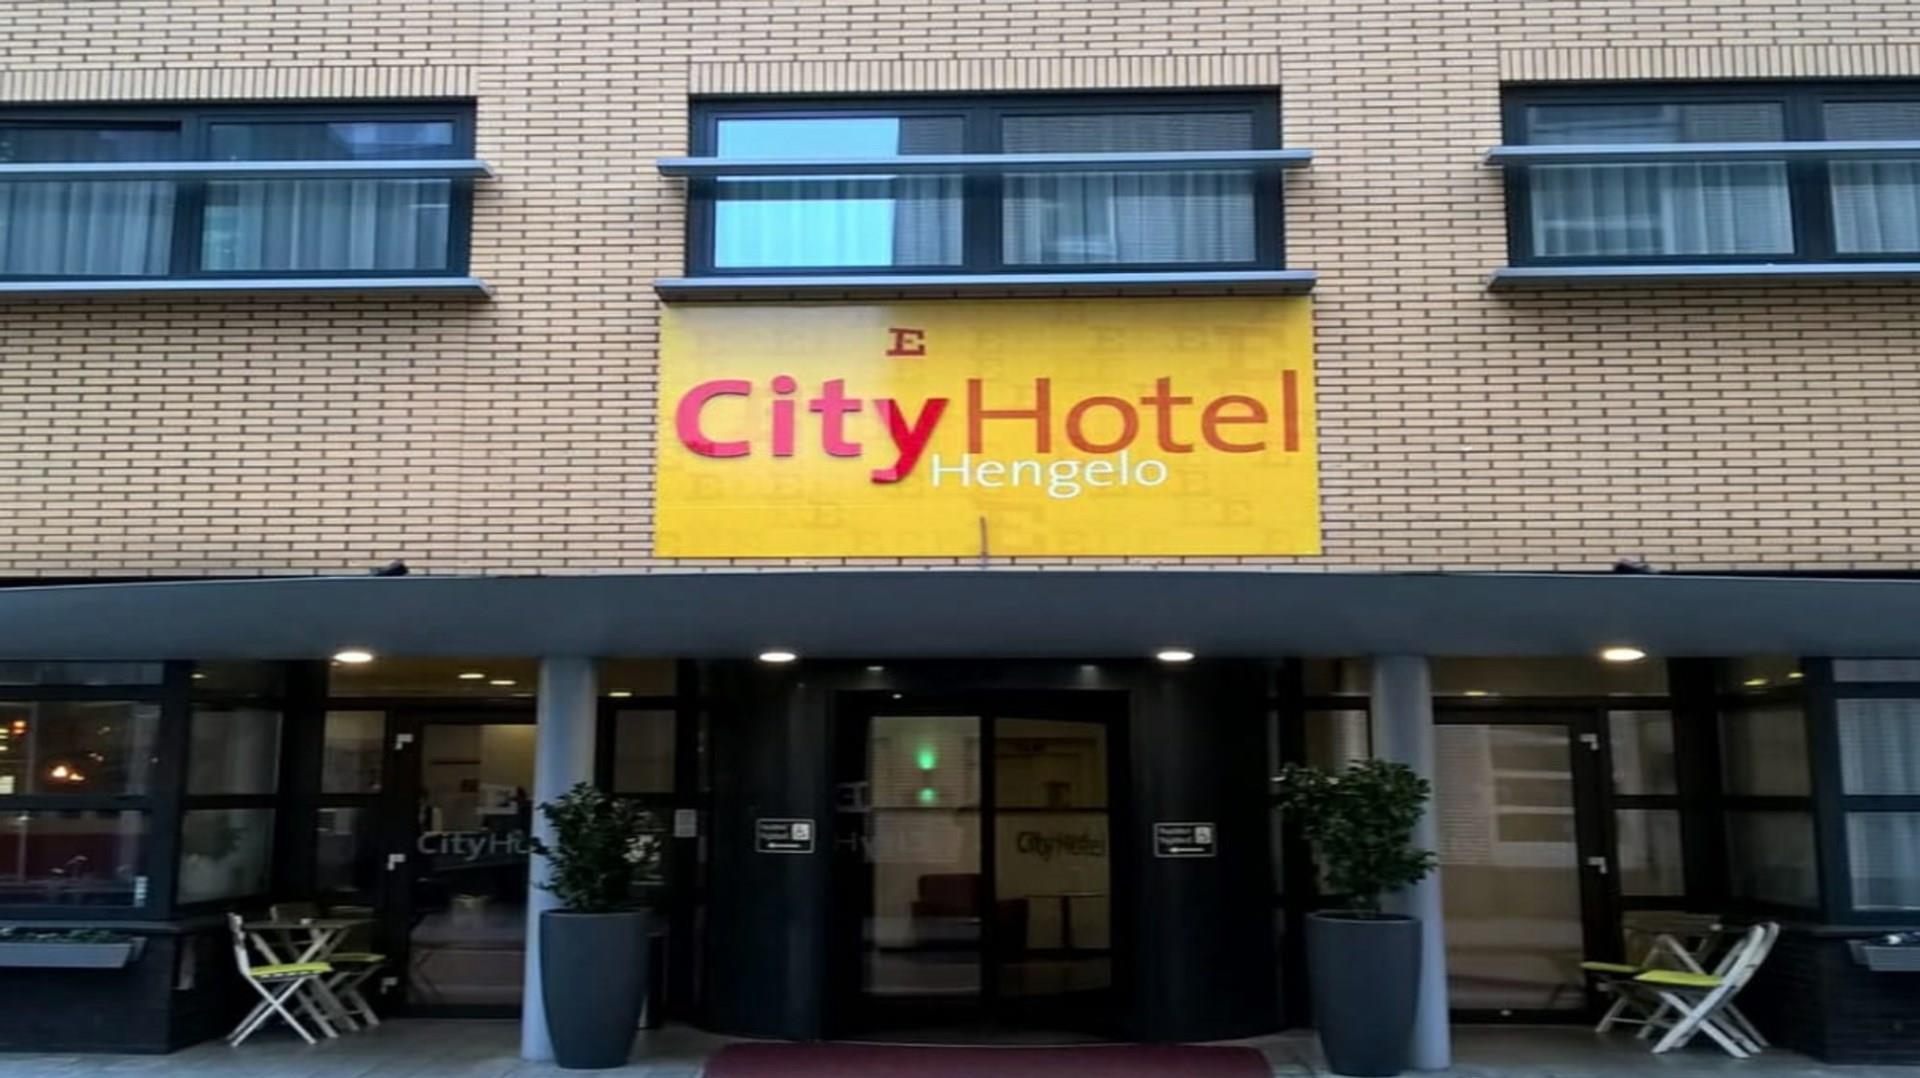 City Hotel Hengelo in Hengelo, NL